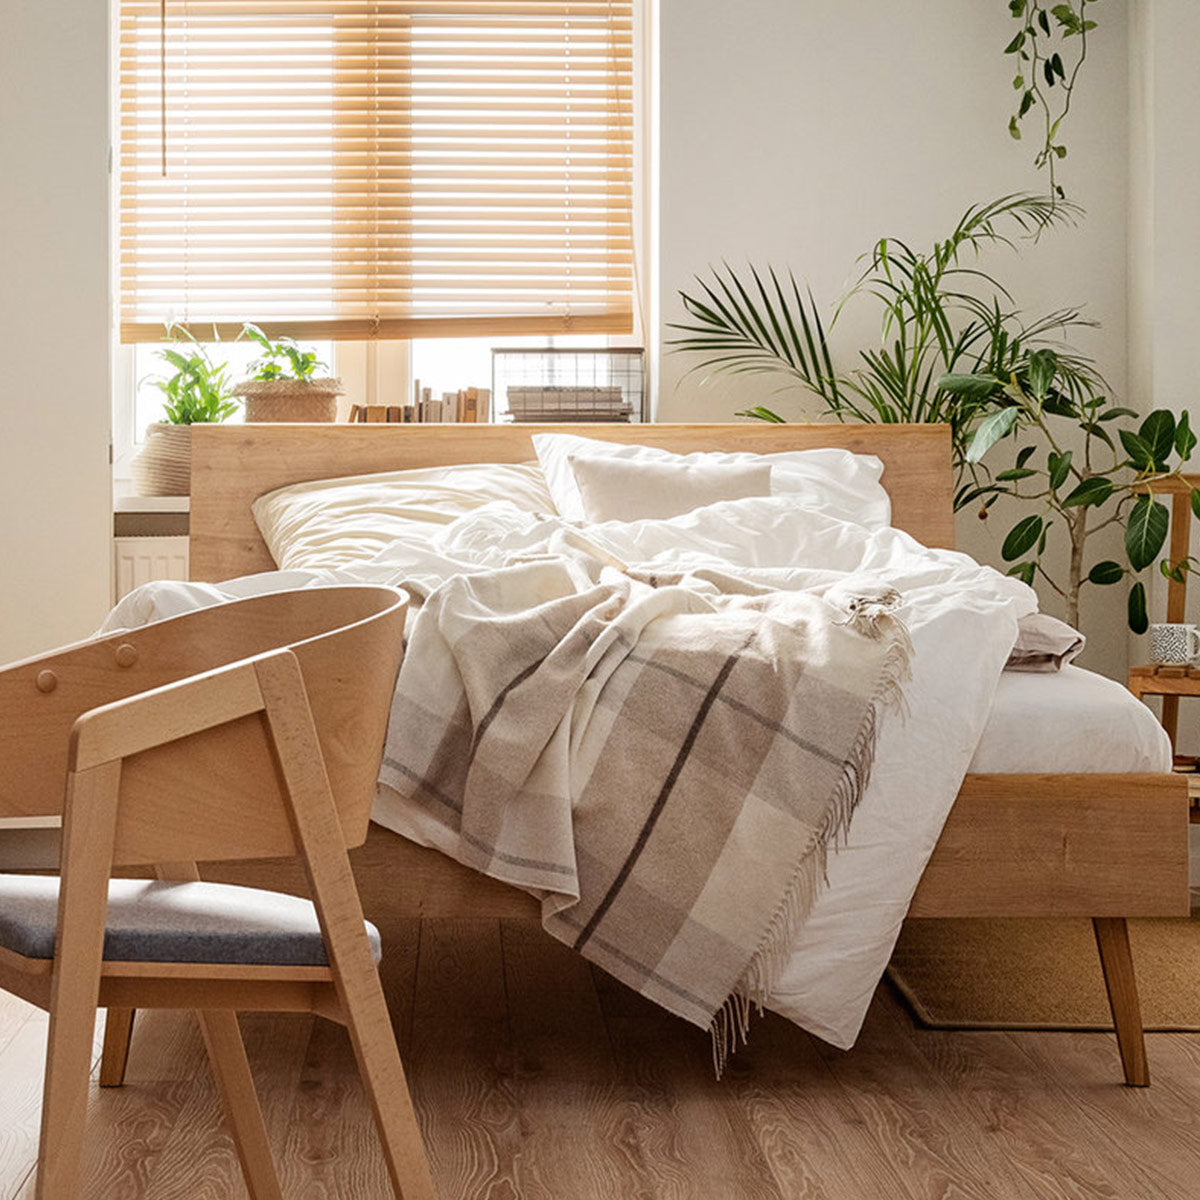 Спалня с плоска табла от естествено дърво NATURE с дървени крака и различни рамери